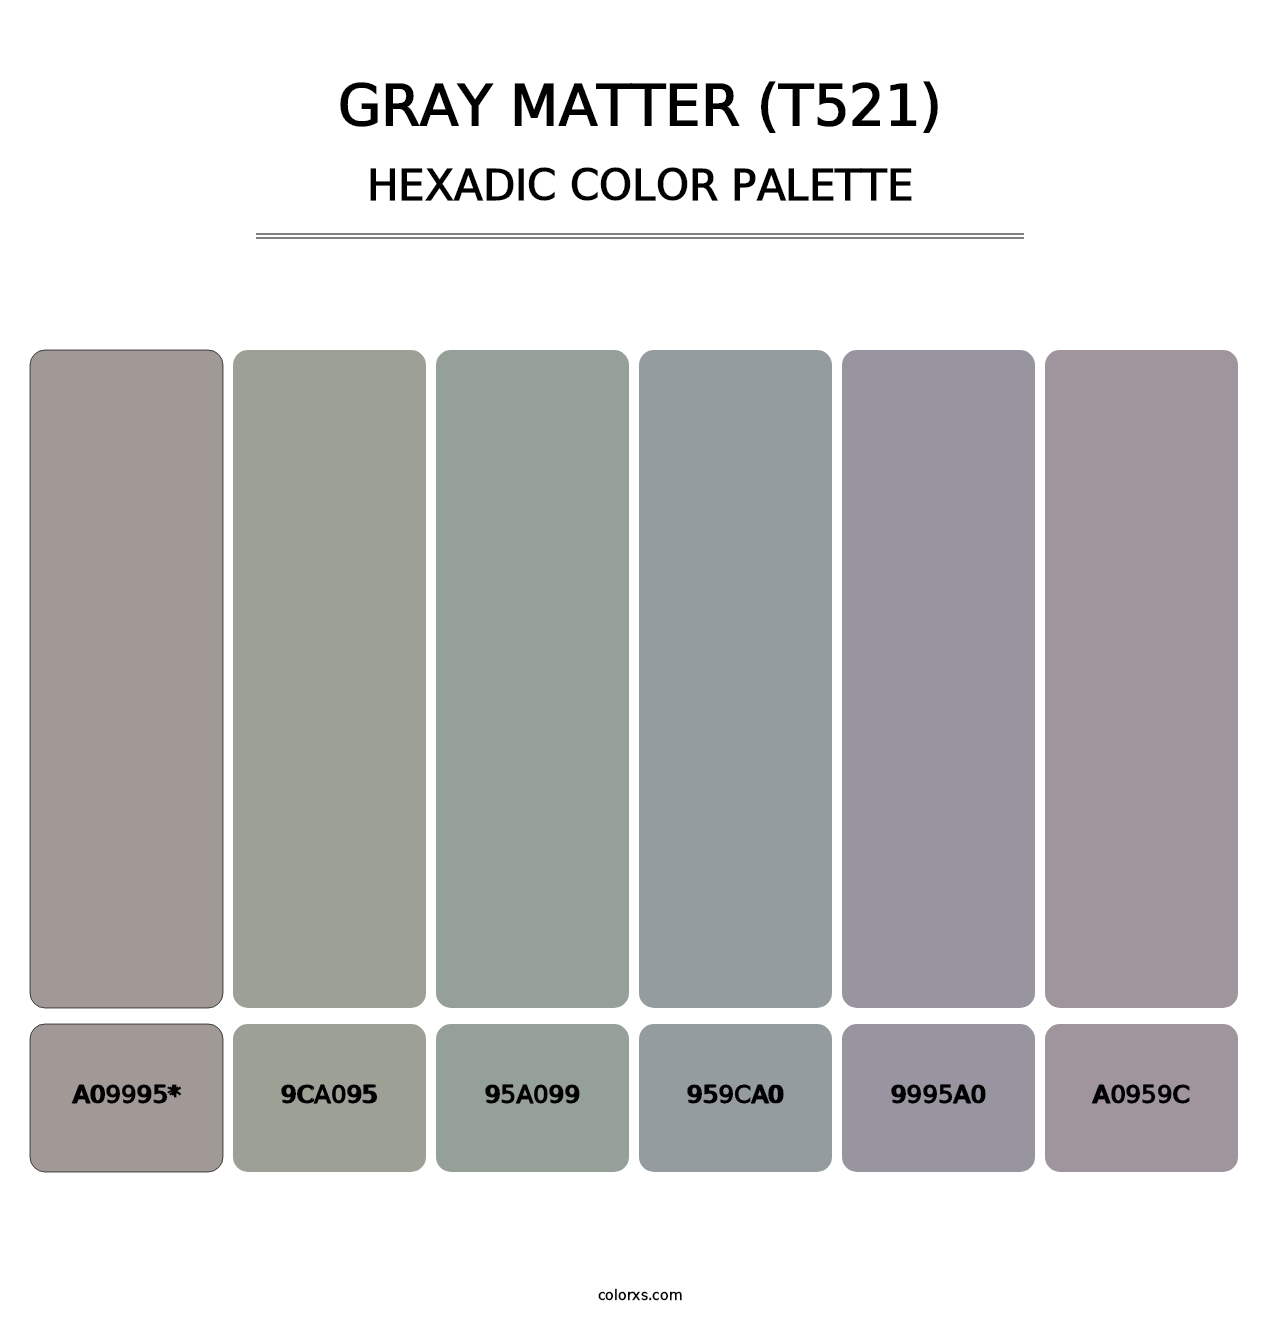 Gray Matter (T521) - Hexadic Color Palette